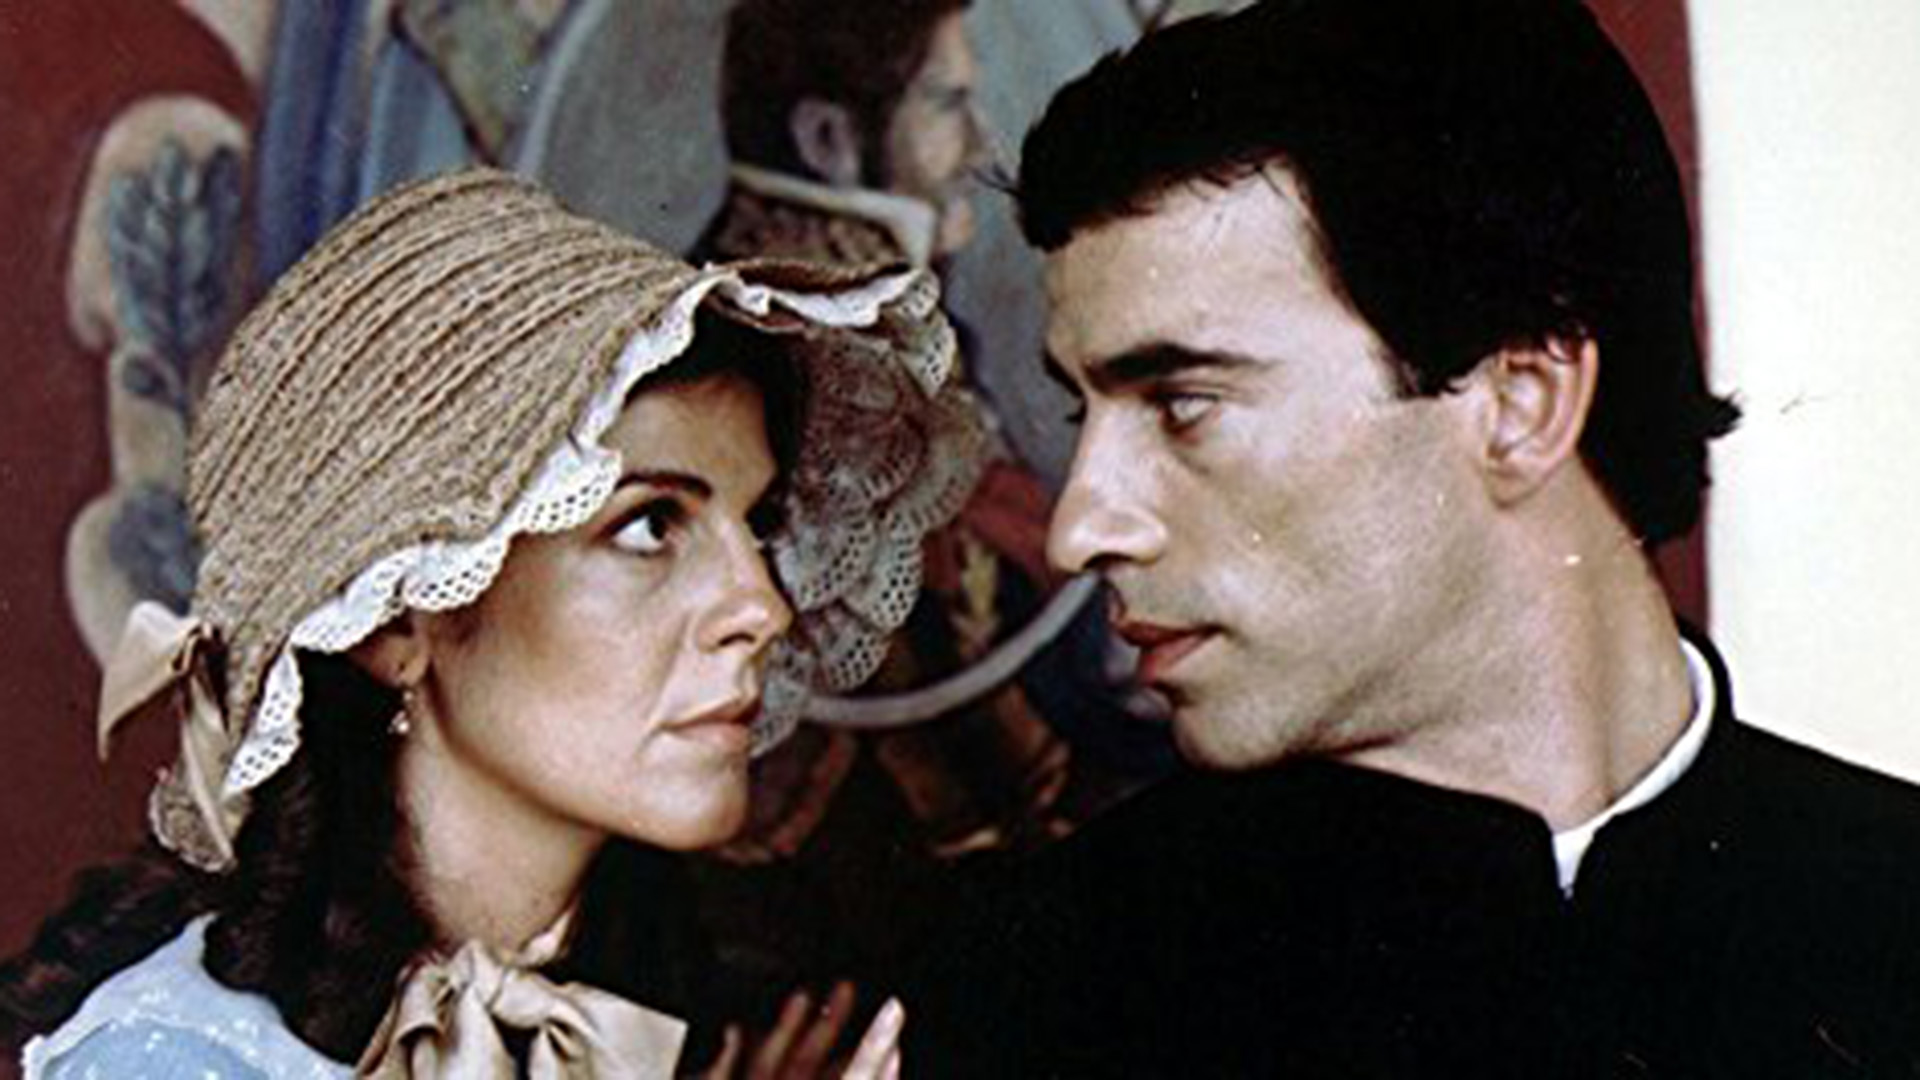 Camila O´Gorman y  Ladislao Gutierrez, una pasión prohibida en el clásico filme de María Luisa Bemberg.